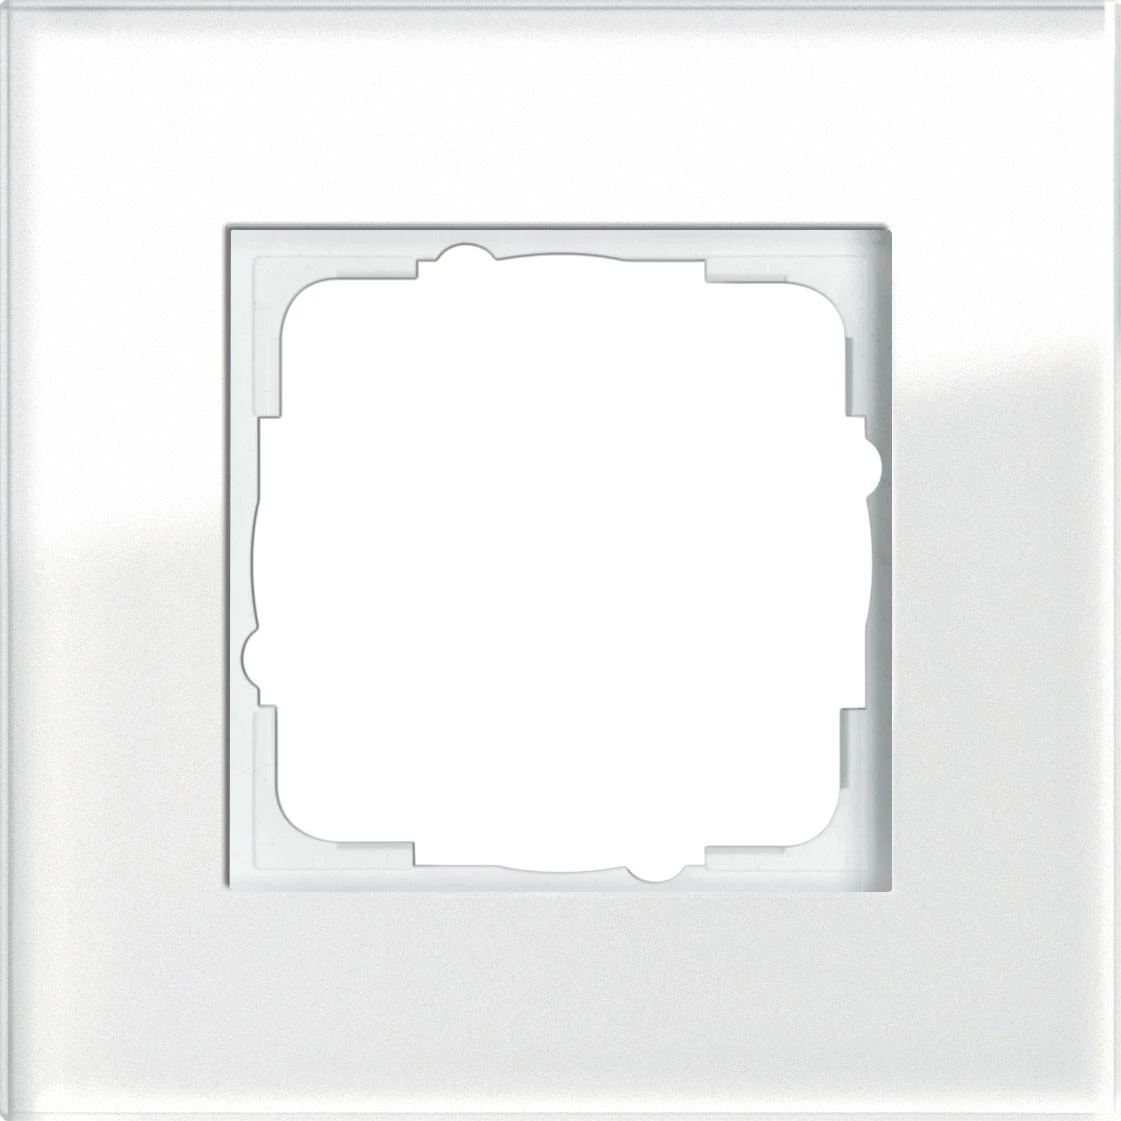  артикул 021112 название Рамка 1-ая (одинарная), Стекло Белое, серия Esprit